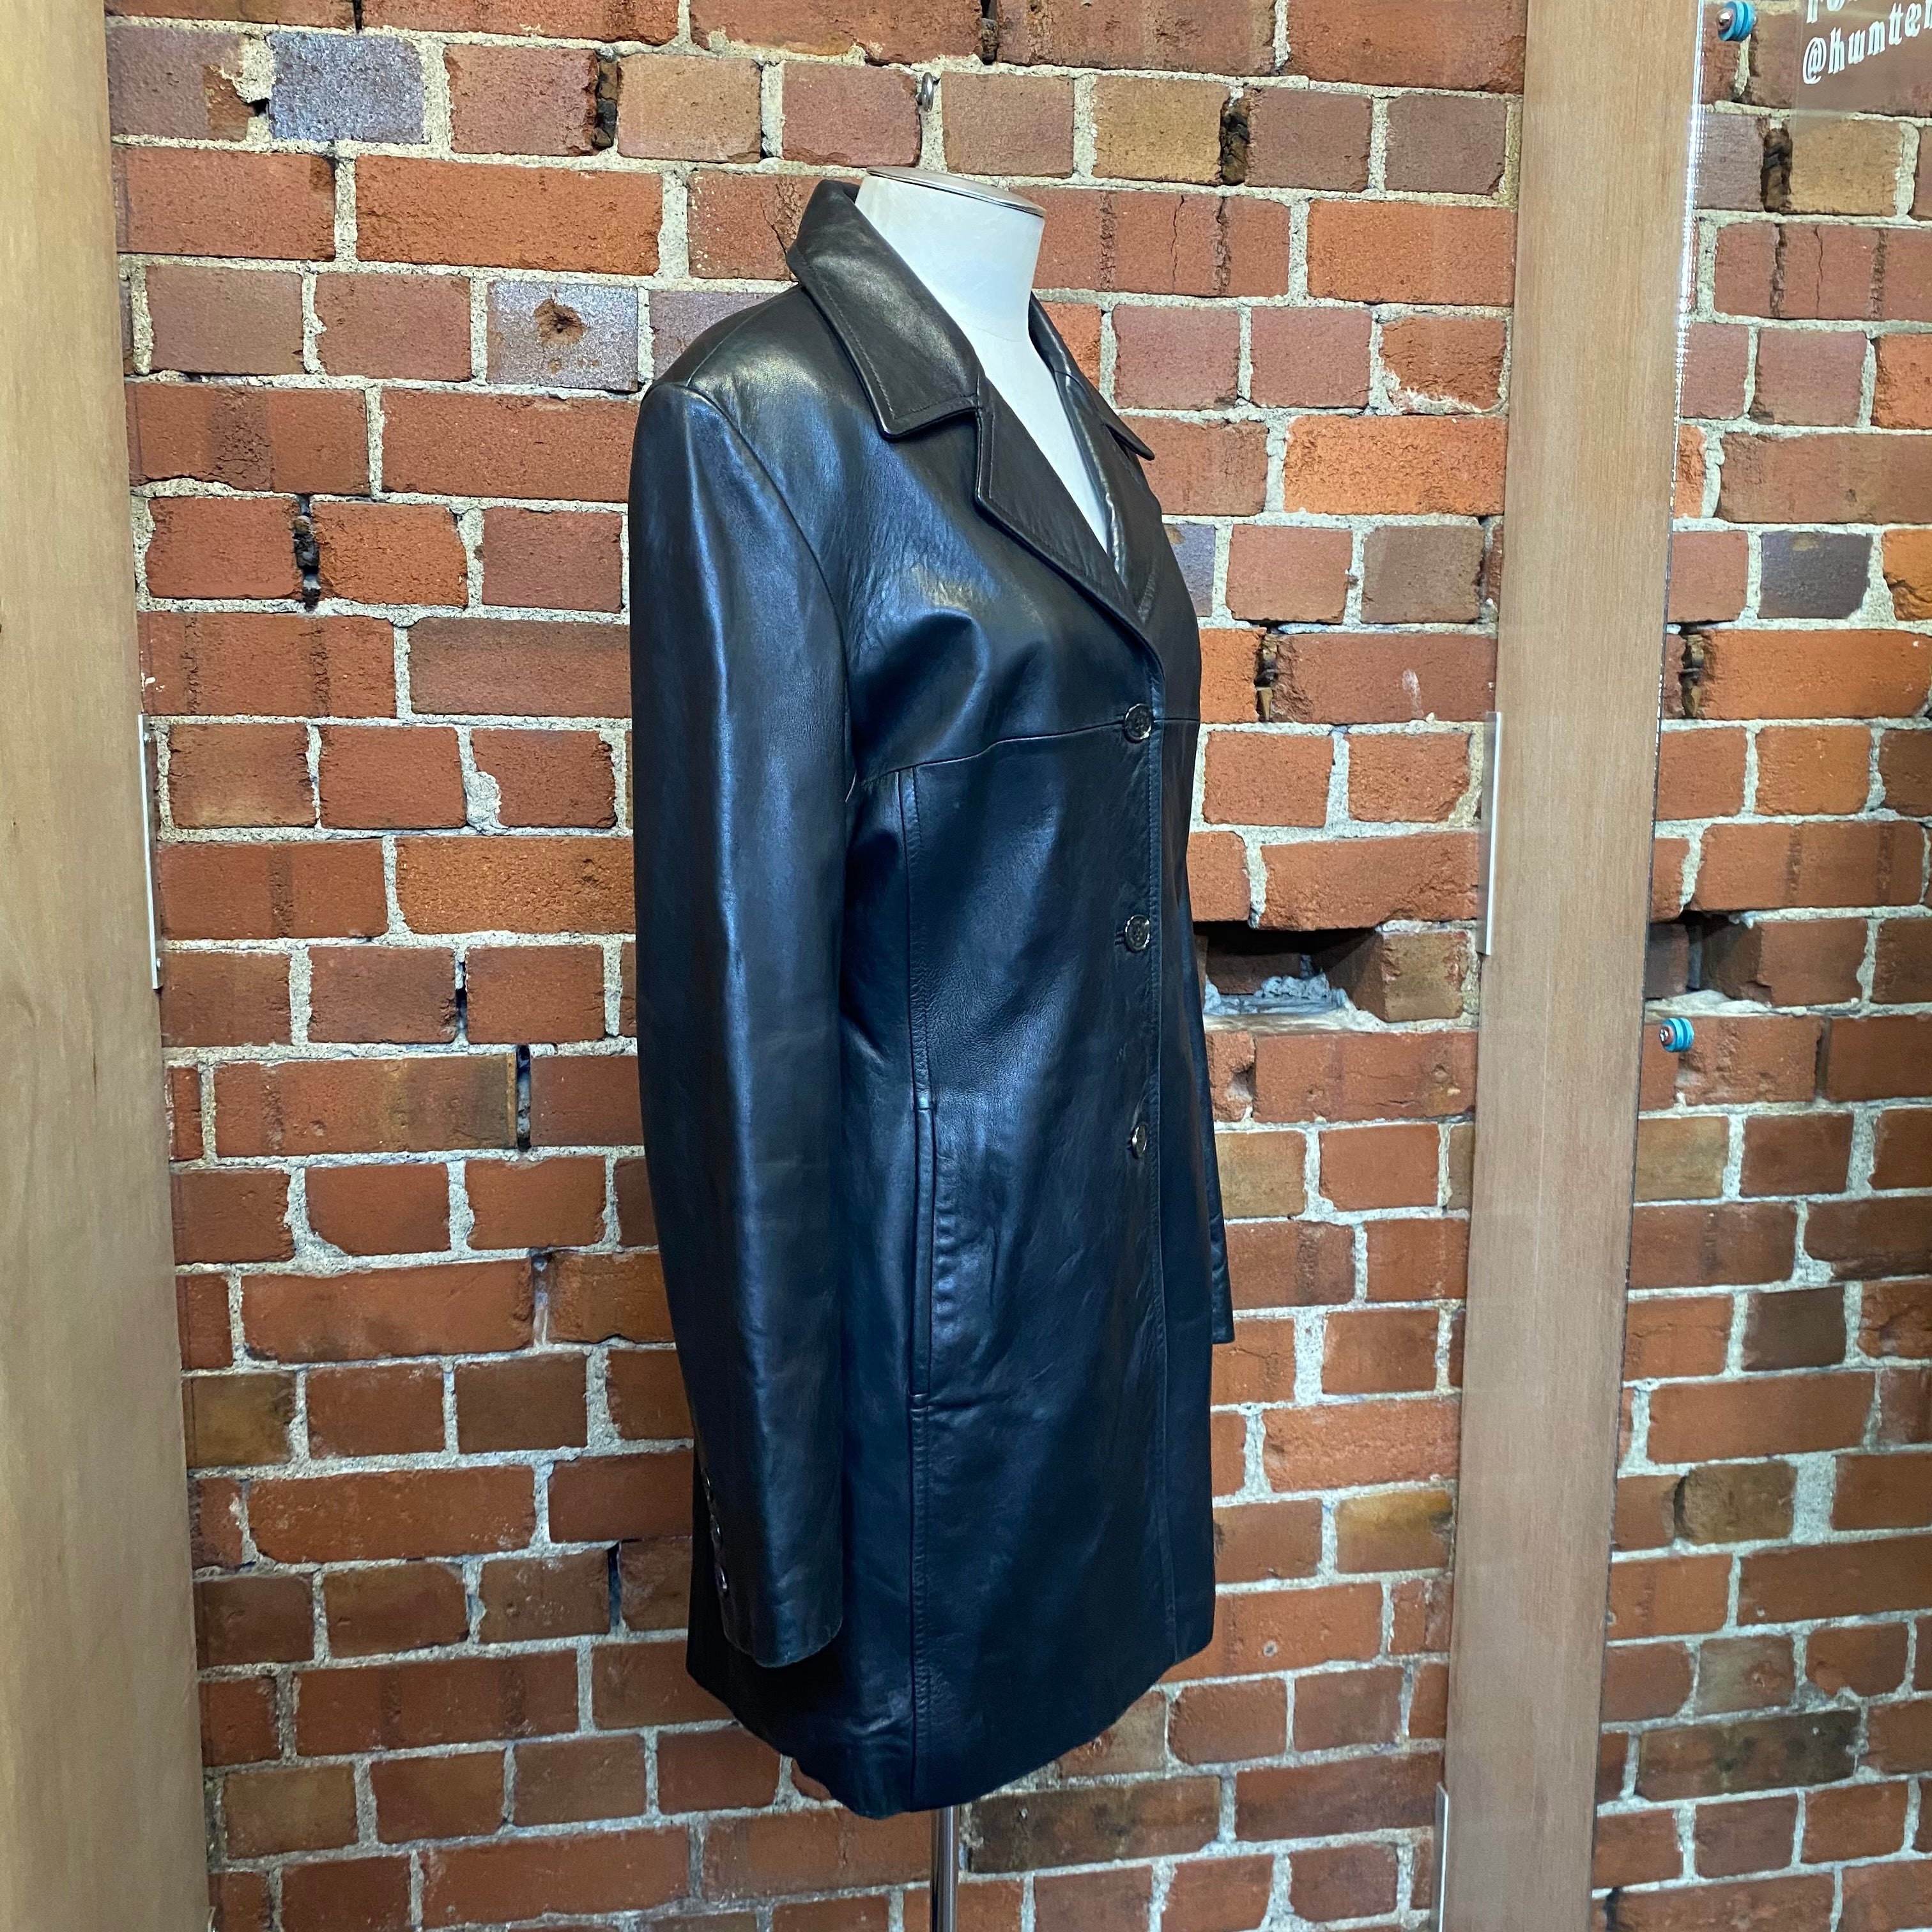 2000's leather jacket